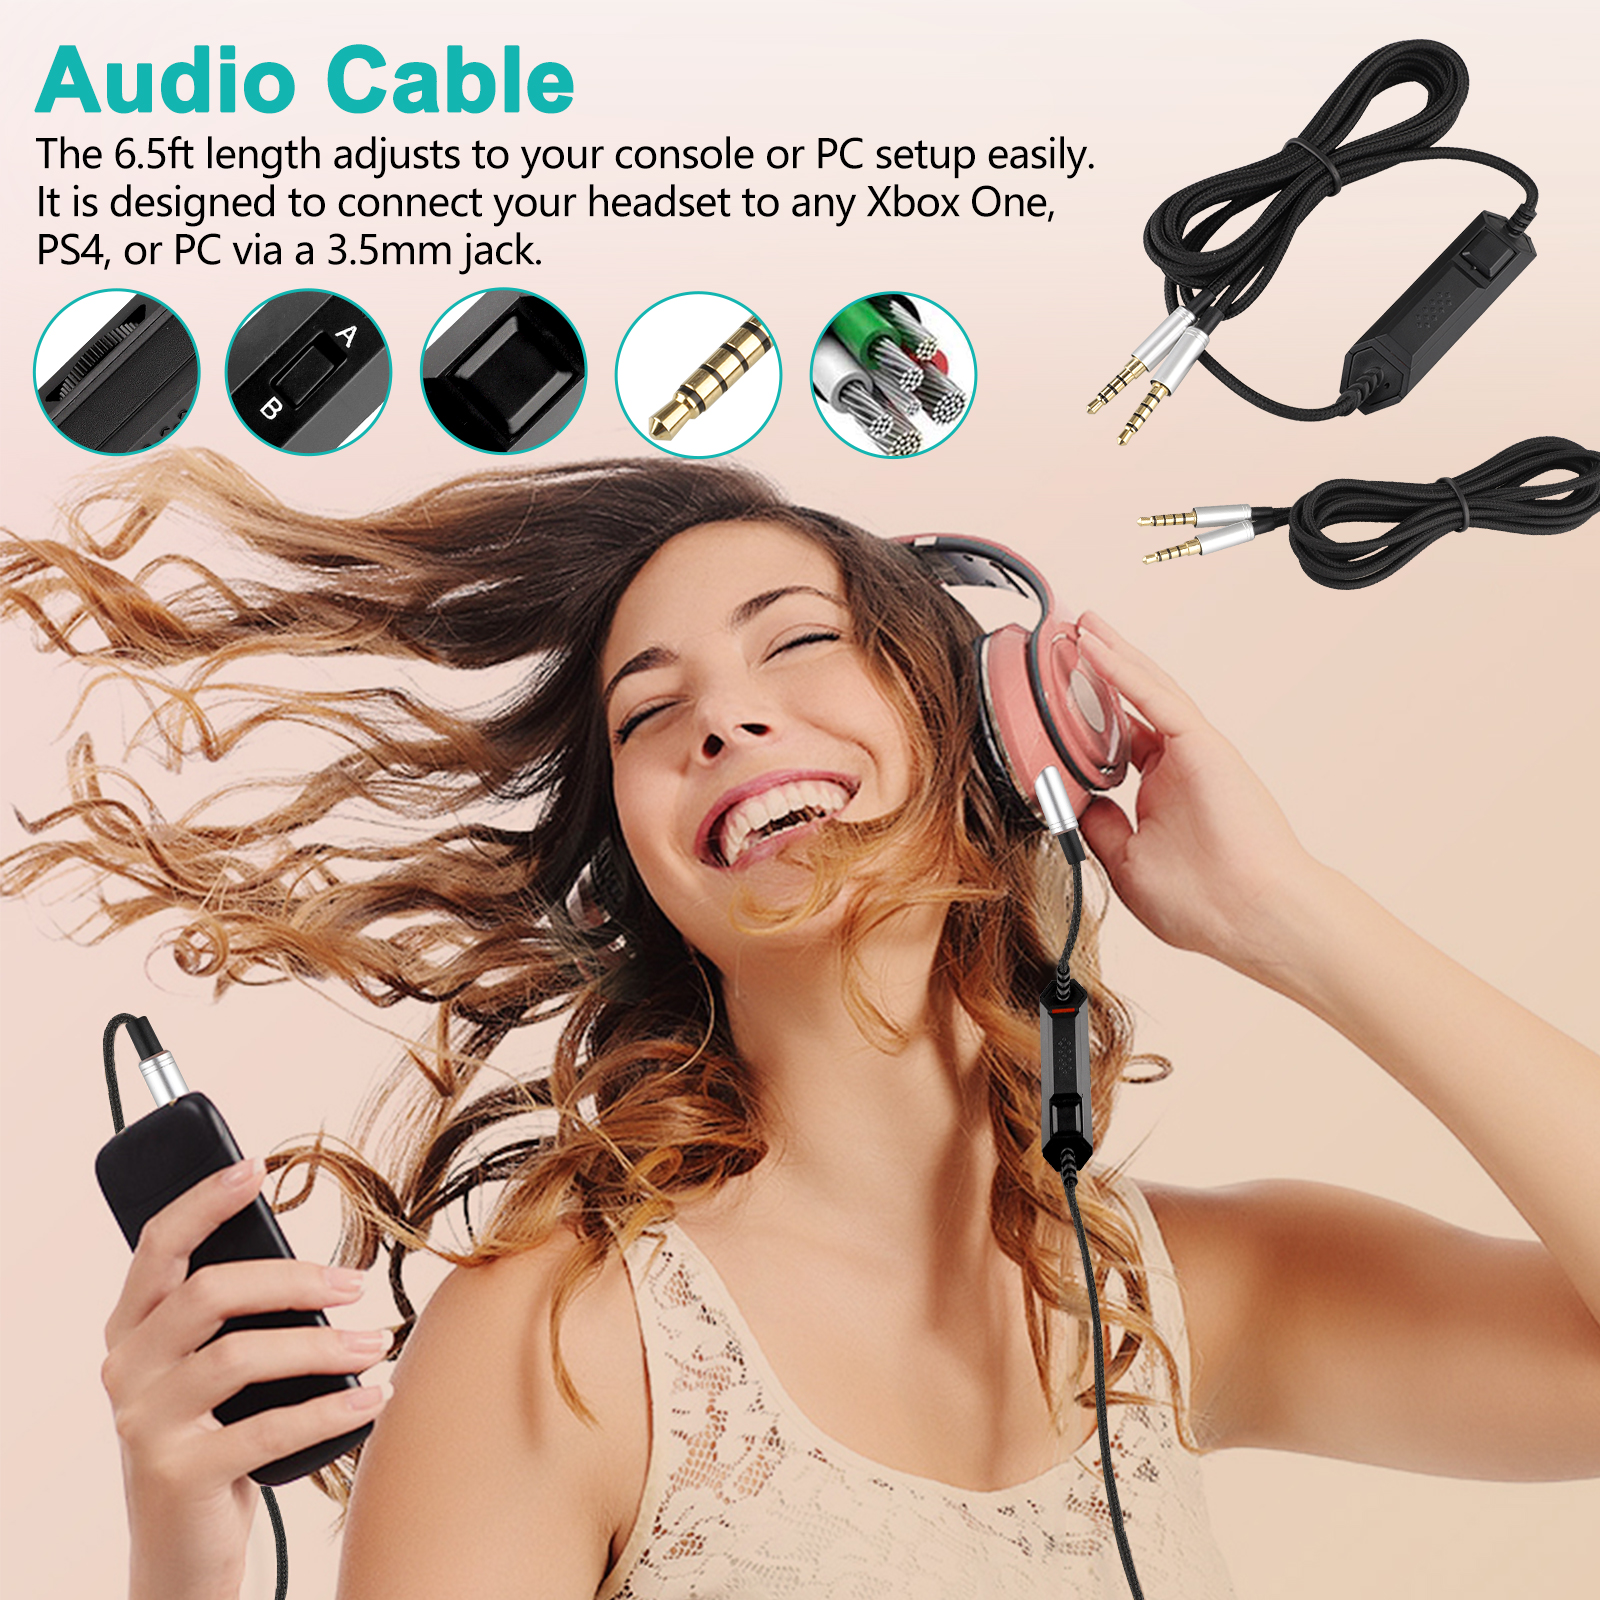 Auriculares Para Juegos 3 5mm Cable De Audio Para Astro A10 0 Xbox Estacion Ps4 Apt One Play Ebay